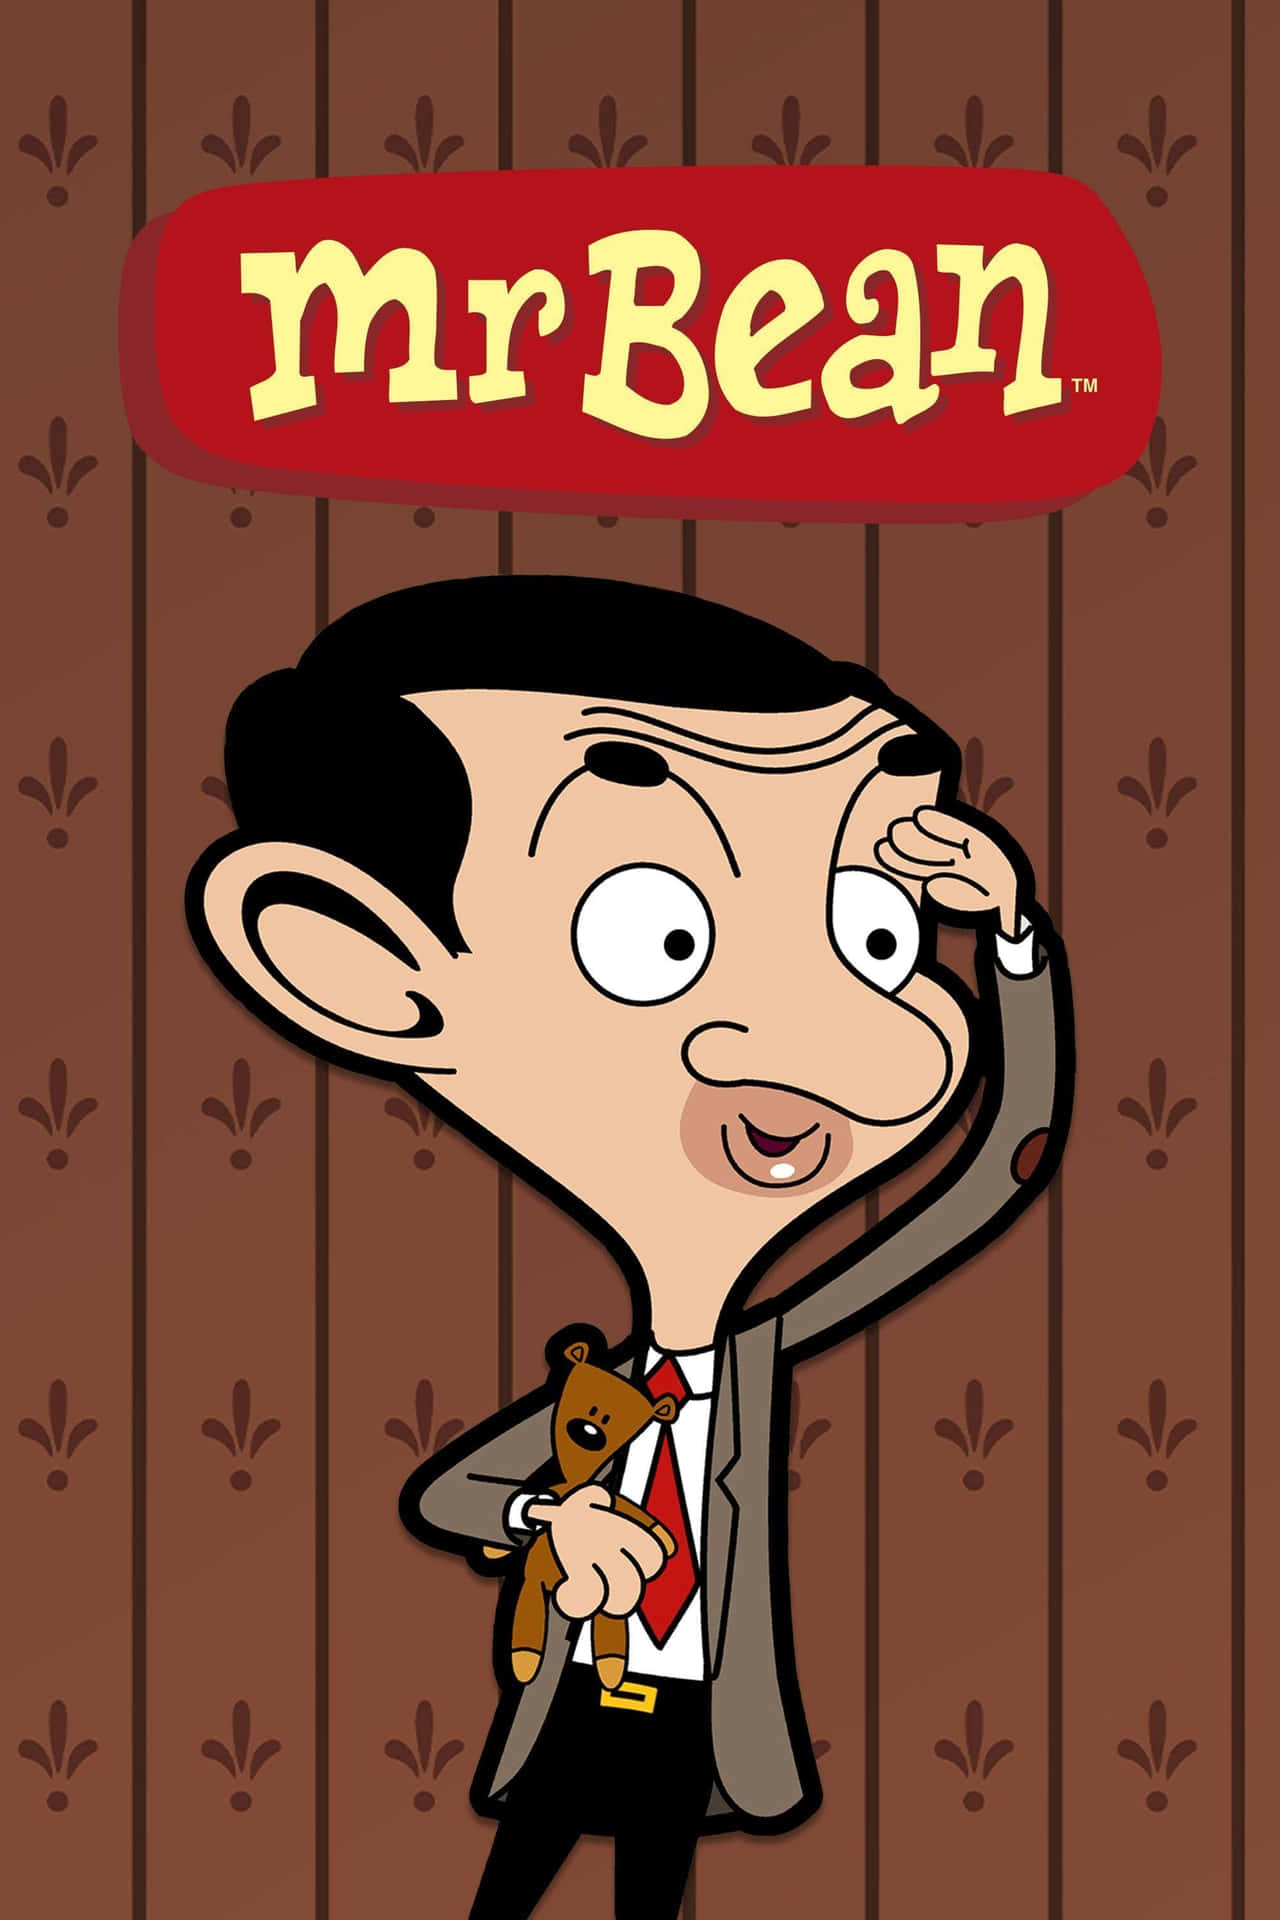 Ildivertente E Avventuroso Viaggio Di Mr. Bean